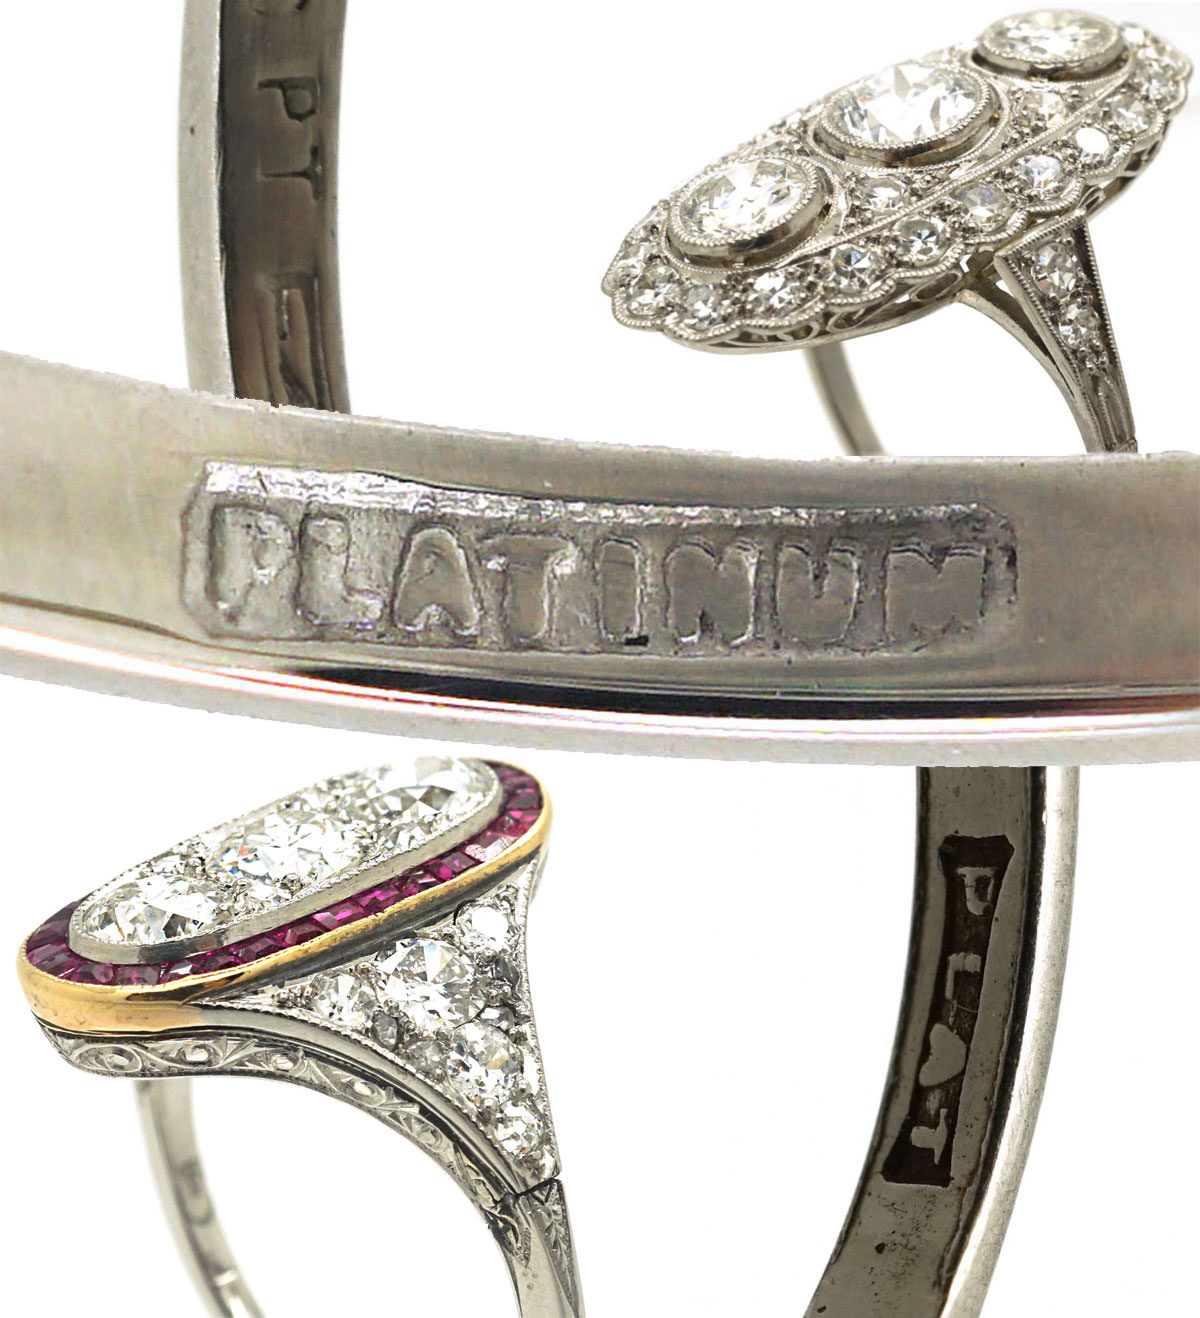 Platinum Art Deco ring